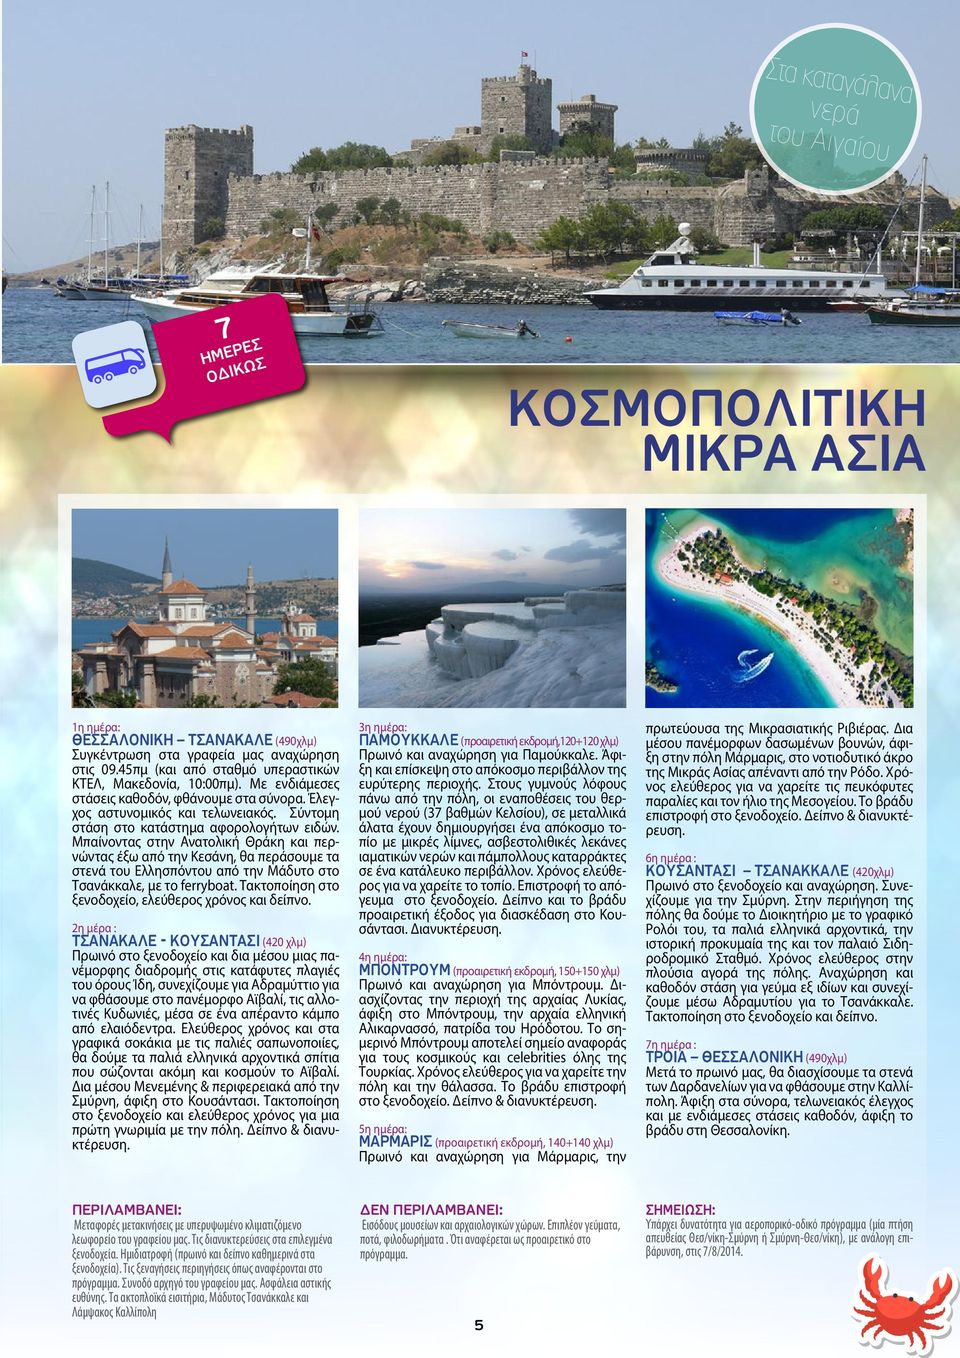 Μπαίνοντας στην Ανατολική Θράκη και περνώντας έξω από την Κεσάνη, θα περάσουμε τα στενά του Ελλησπόντου από την Μάδυτο στο Τσανάκκαλε, με το ferryboat.